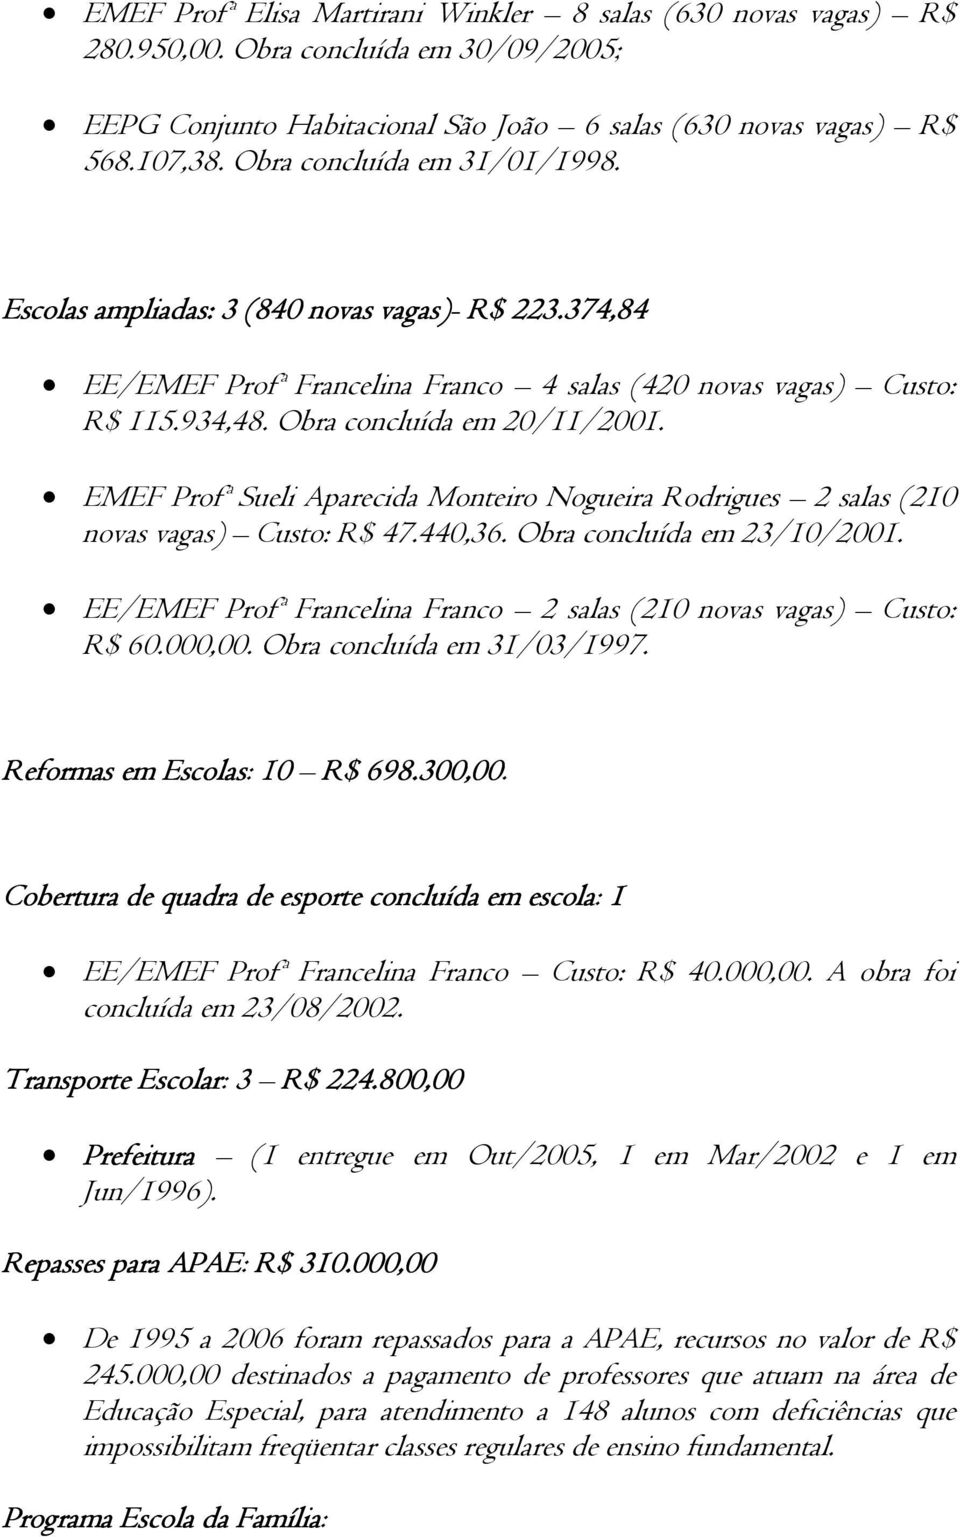 EMEF Profª Sueli Aparecida Monteiro Nogueira Rodrigues 2 salas (210 novas vagas) Custo: R$ 47.440,36. Obra concluída em 23/10/2001.